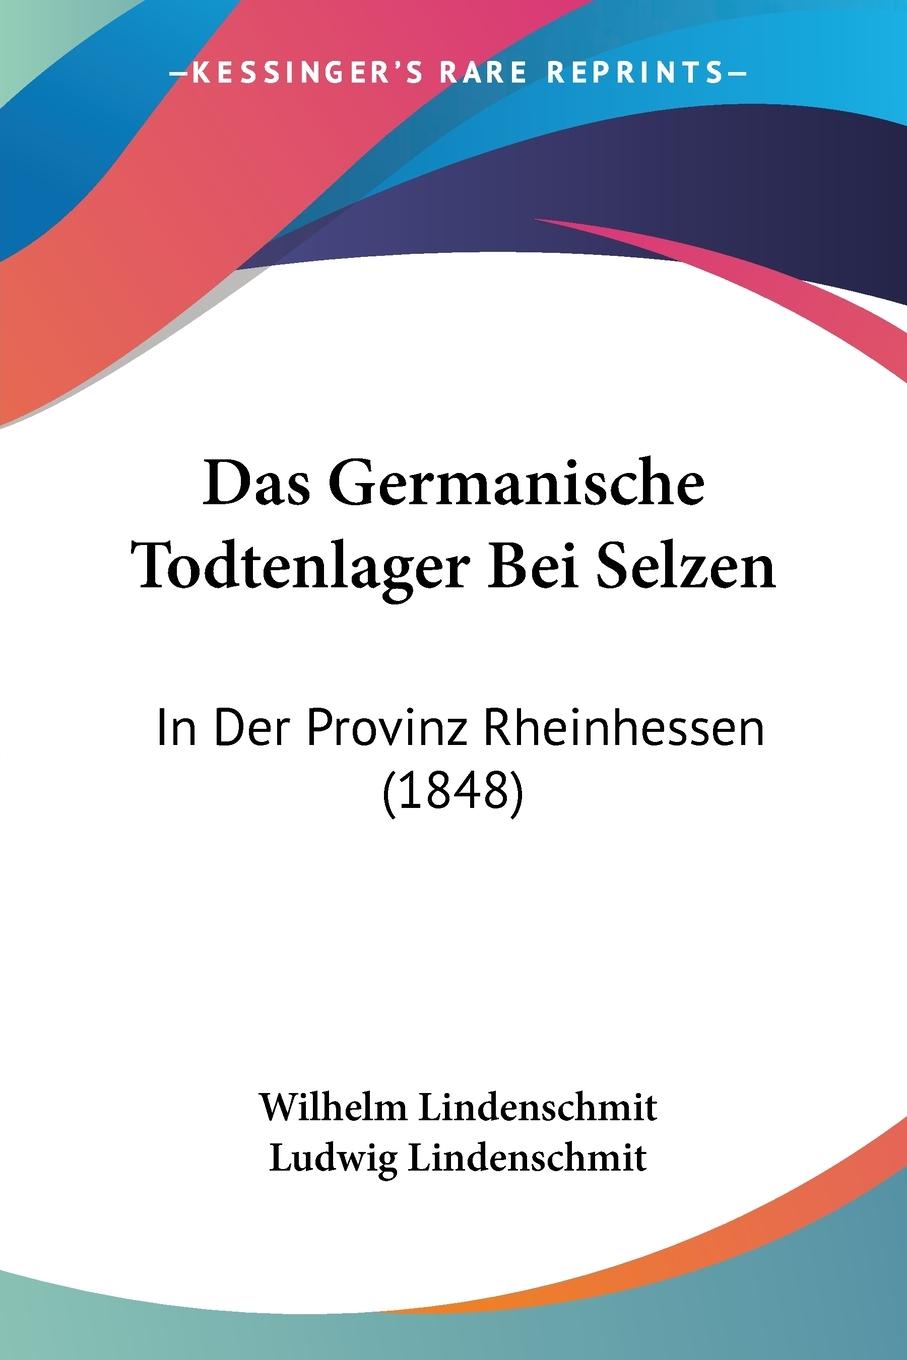 Das Germanische Todtenlager Bei Selzen - Lindenschmit, Wilhelm Lindenschmit, Ludwig